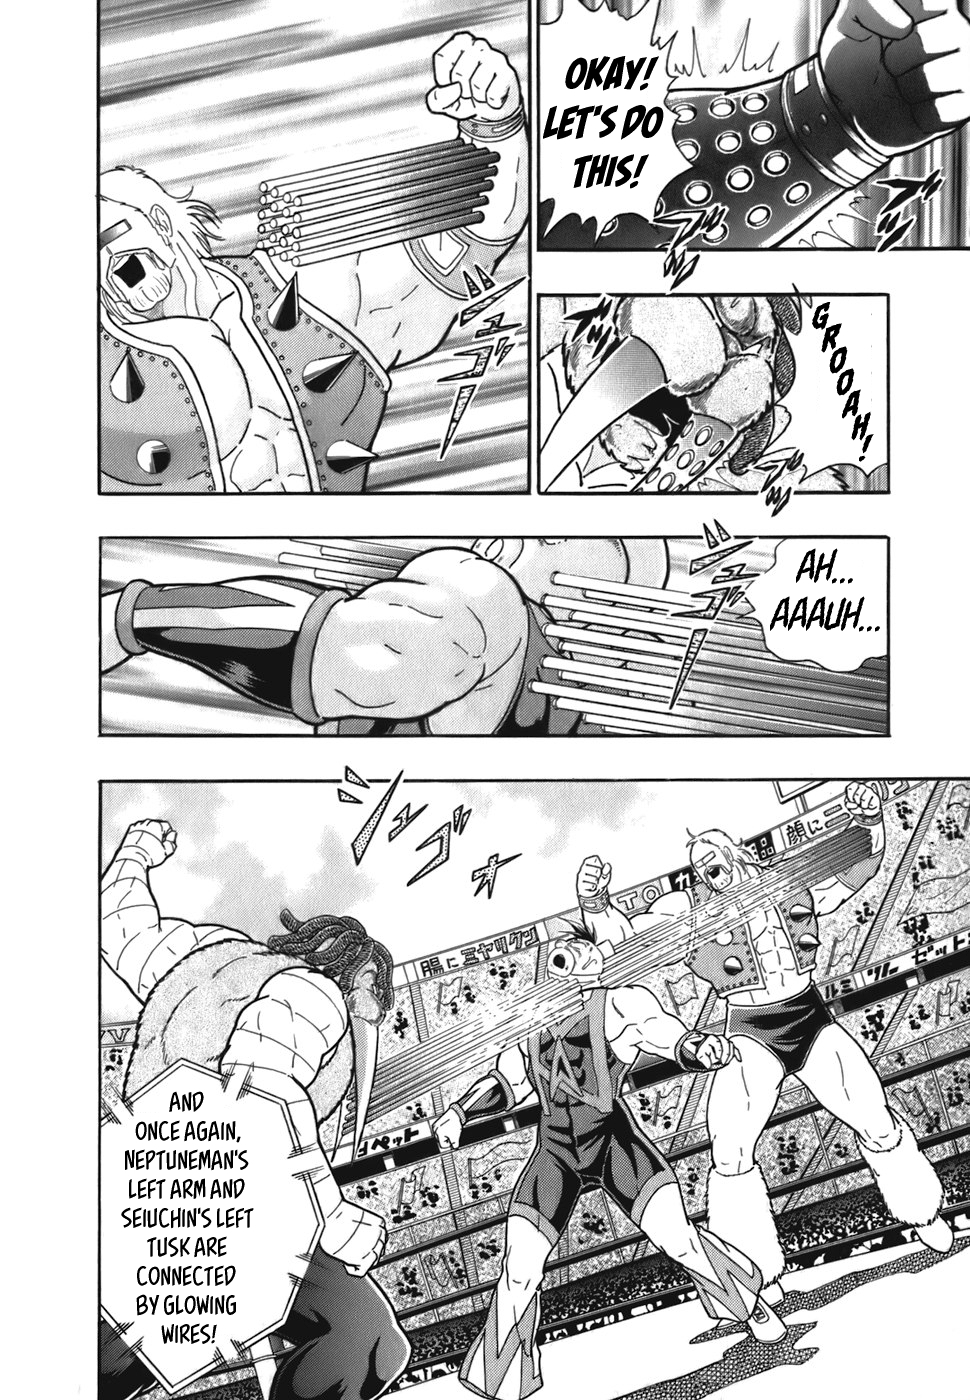 Kinnikuman II Sei: Kyuukyoku Choujin Tag Hen Vol. 5 Ch. 46 The Shocking Conclusion's The "Tokko Attack"!?